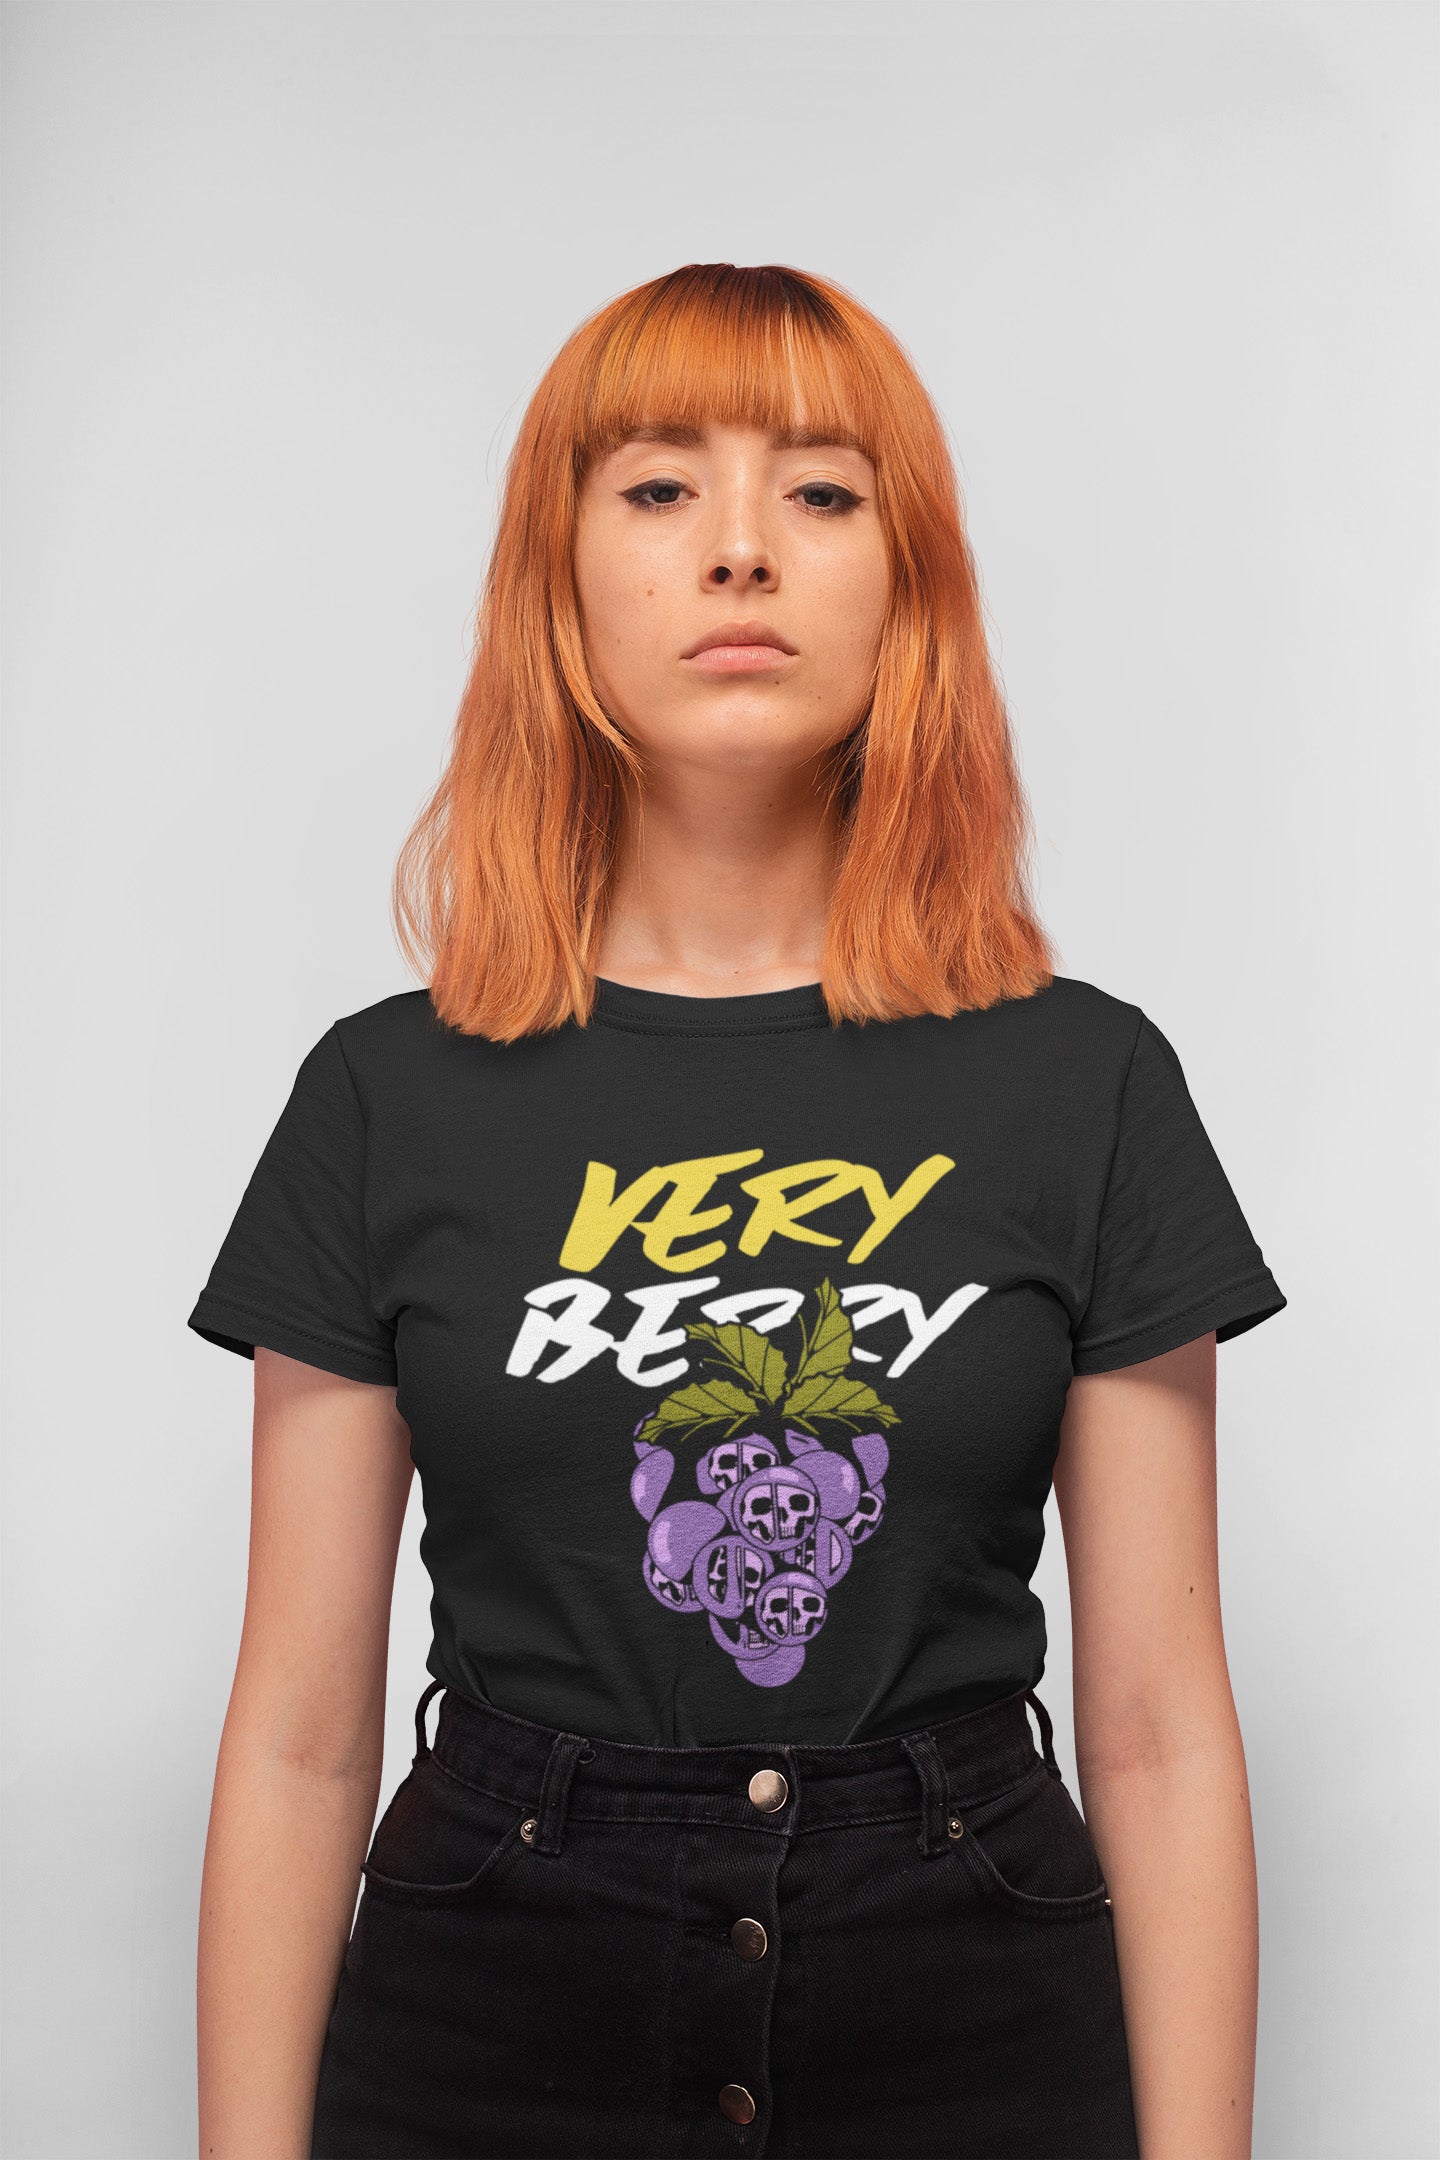 Very Berry Regular Fit T-shirt for Women